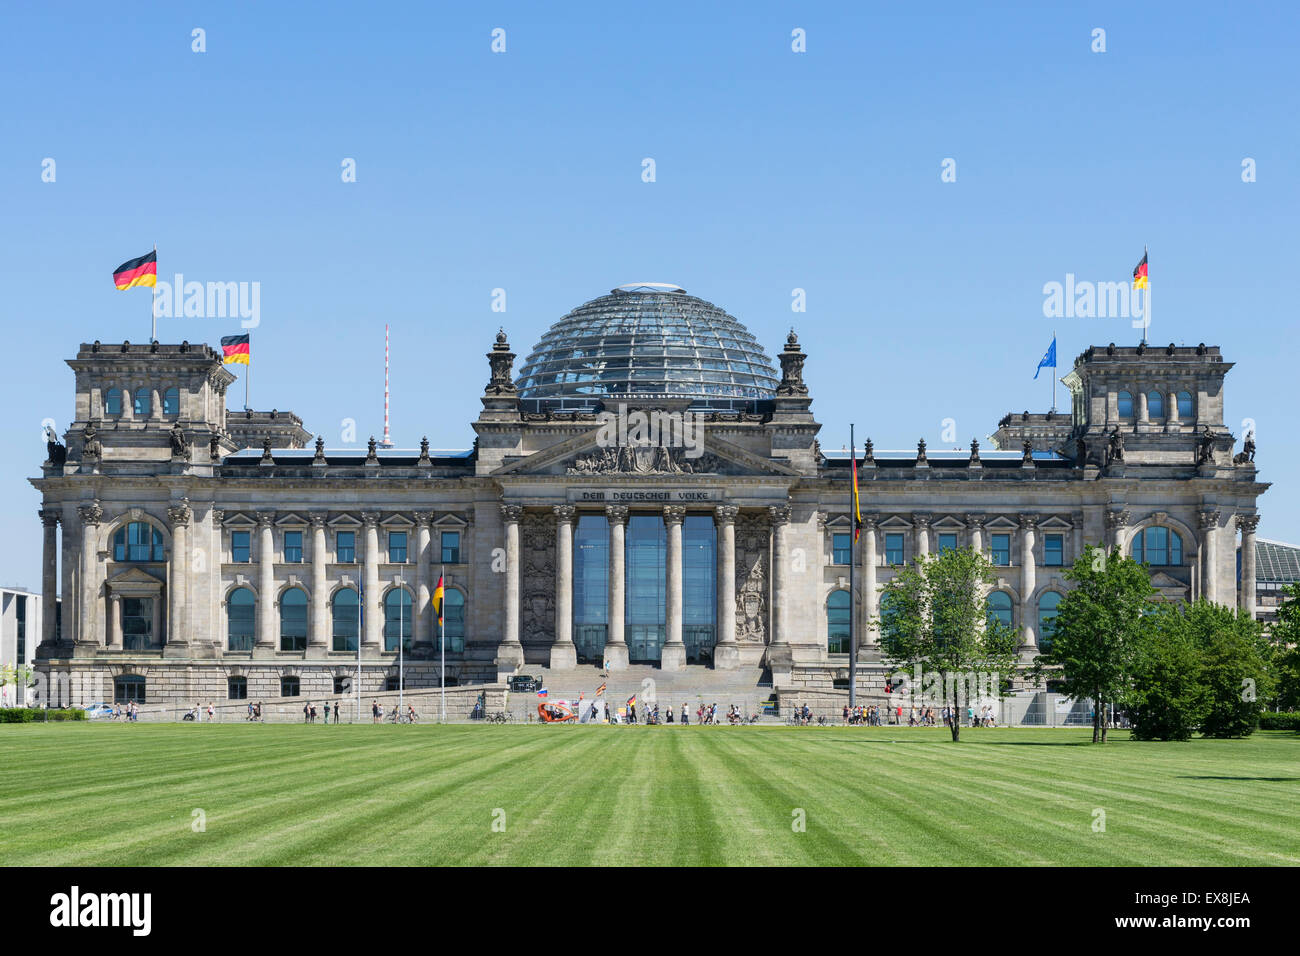 Le bâtiment du parlement allemand Reichstag à Berlin Allemagne Banque D'Images